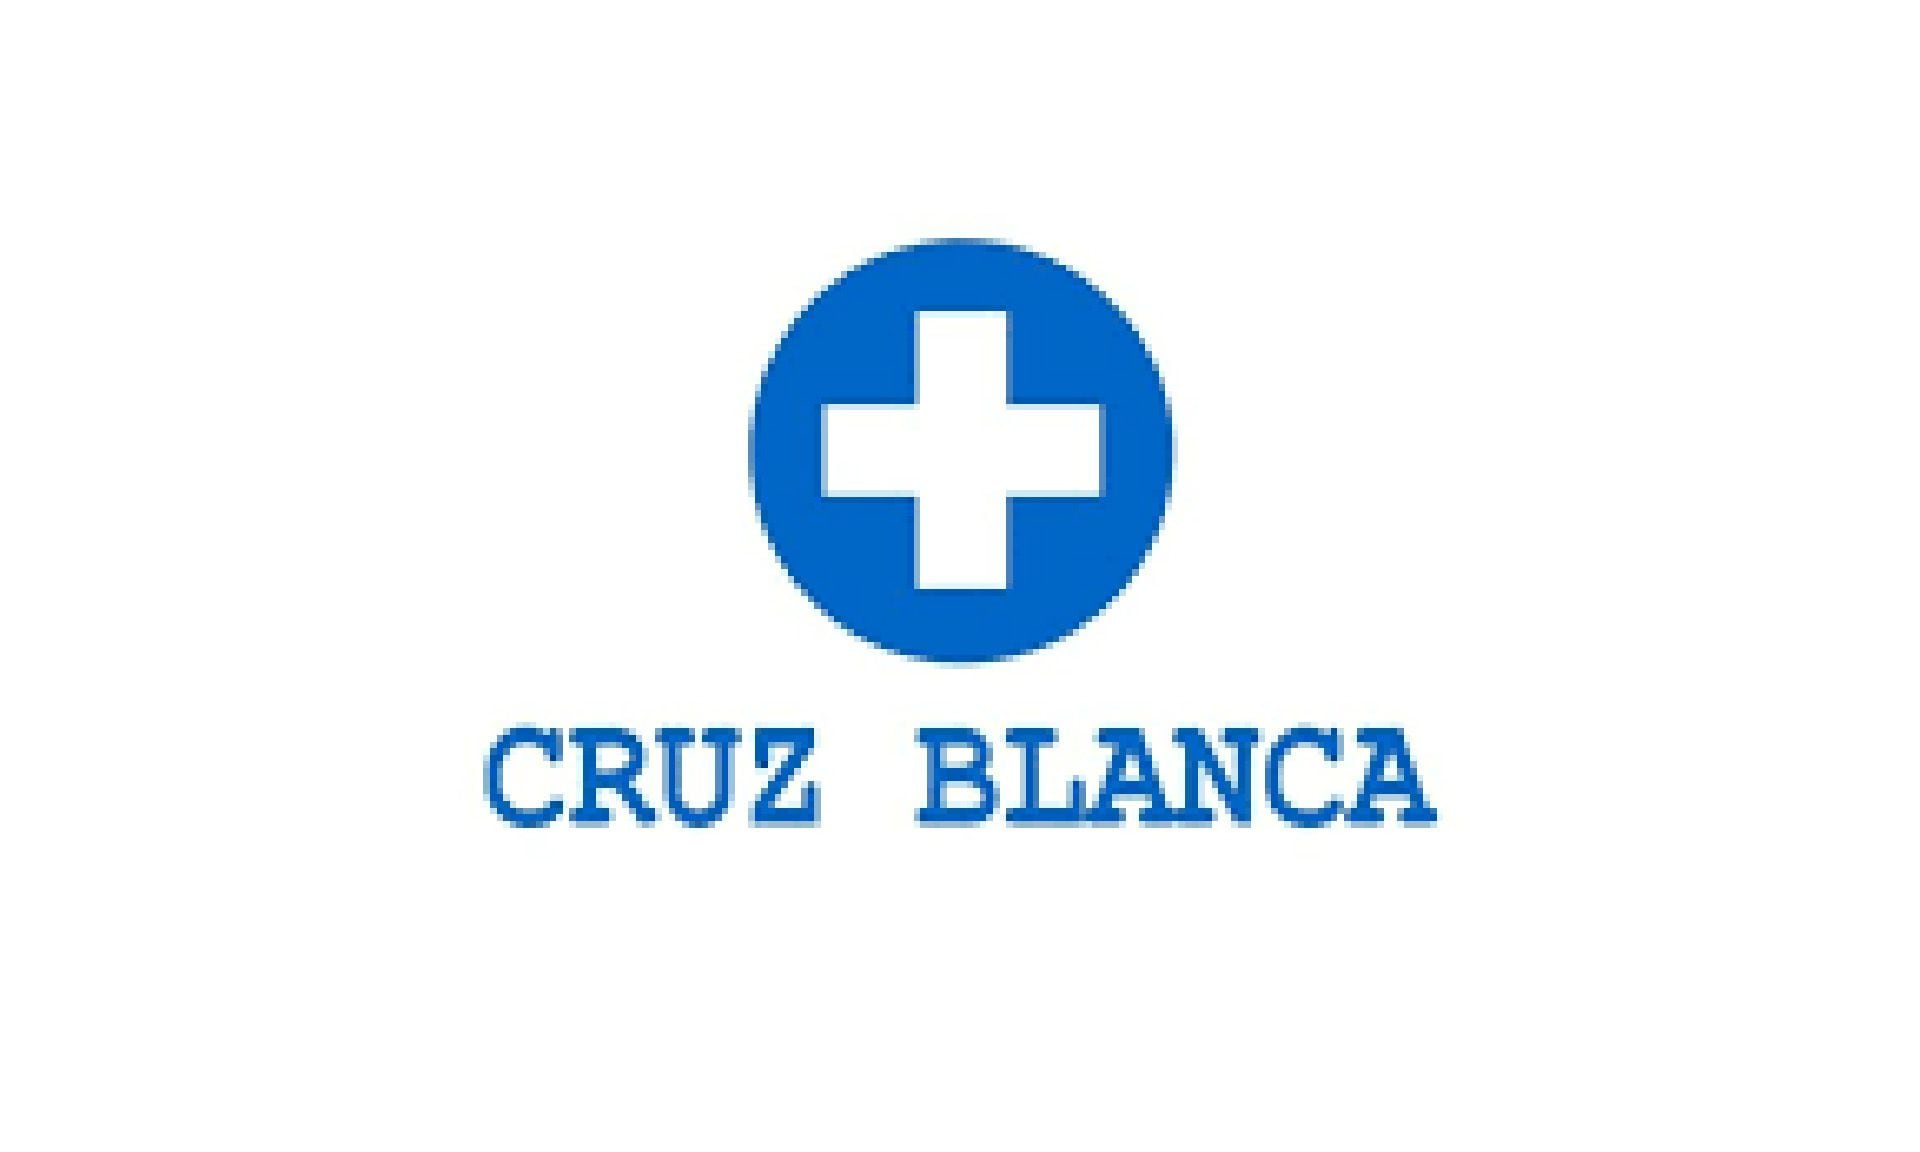 El emblema de la nueva Cruz Blanca usa la misma tipografía que caracteriza a las comunicaciones del gobierno de Daniel Ortega y Rosario Murillo.